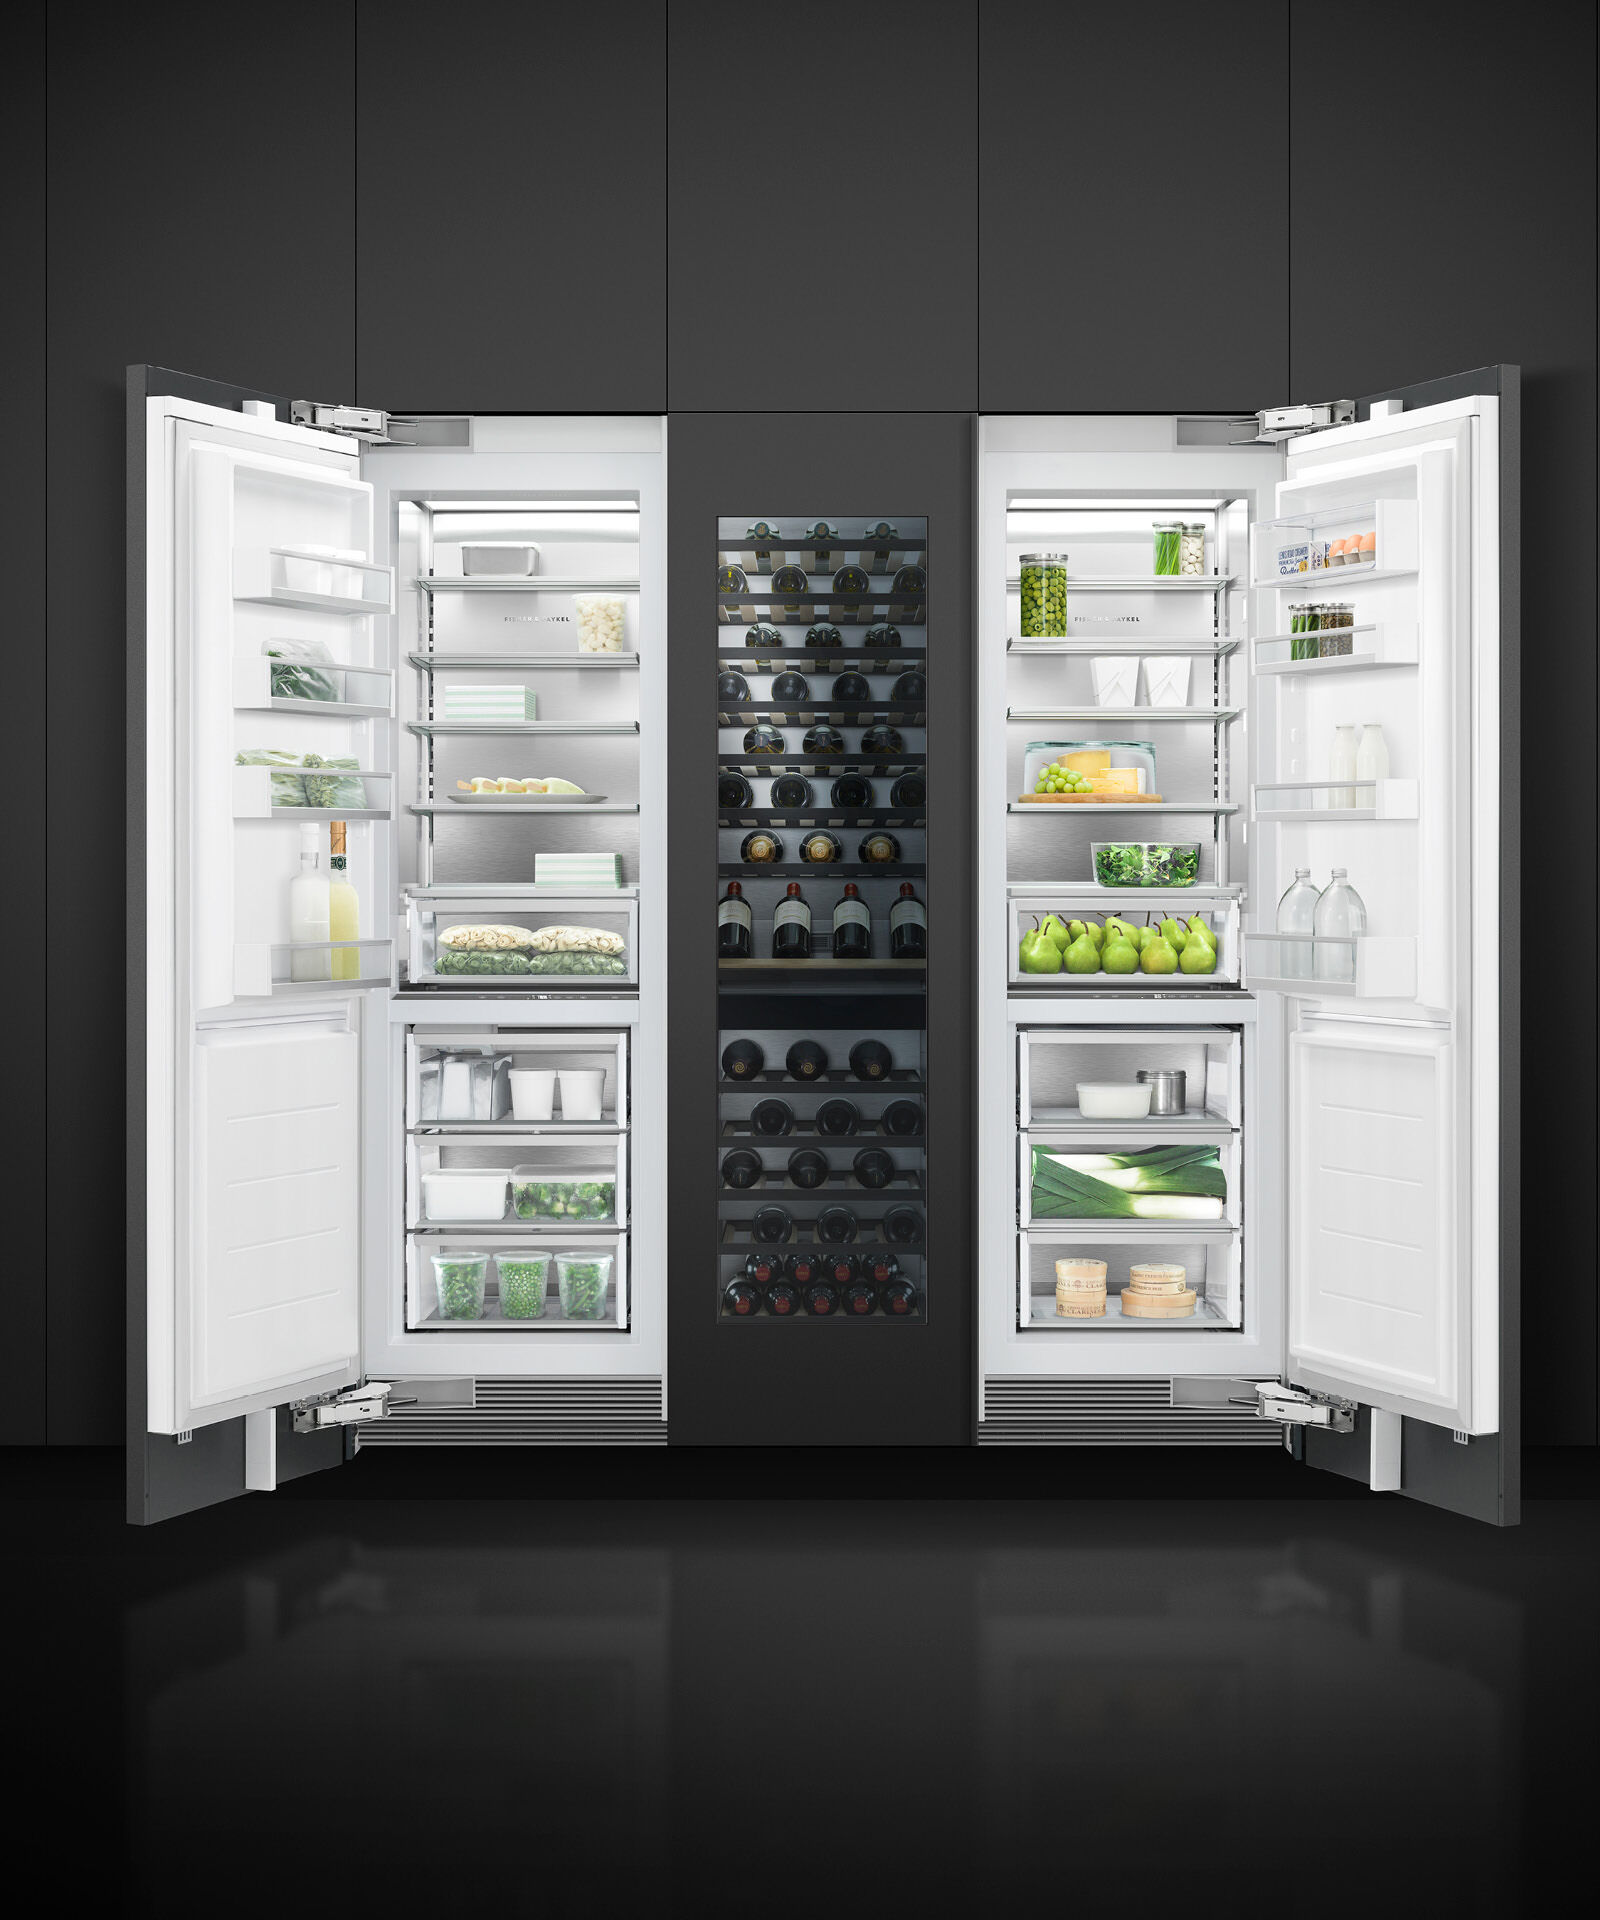 嵌入式立式冷凍櫃, 61cm, 自動製冰 gallery image 9.0